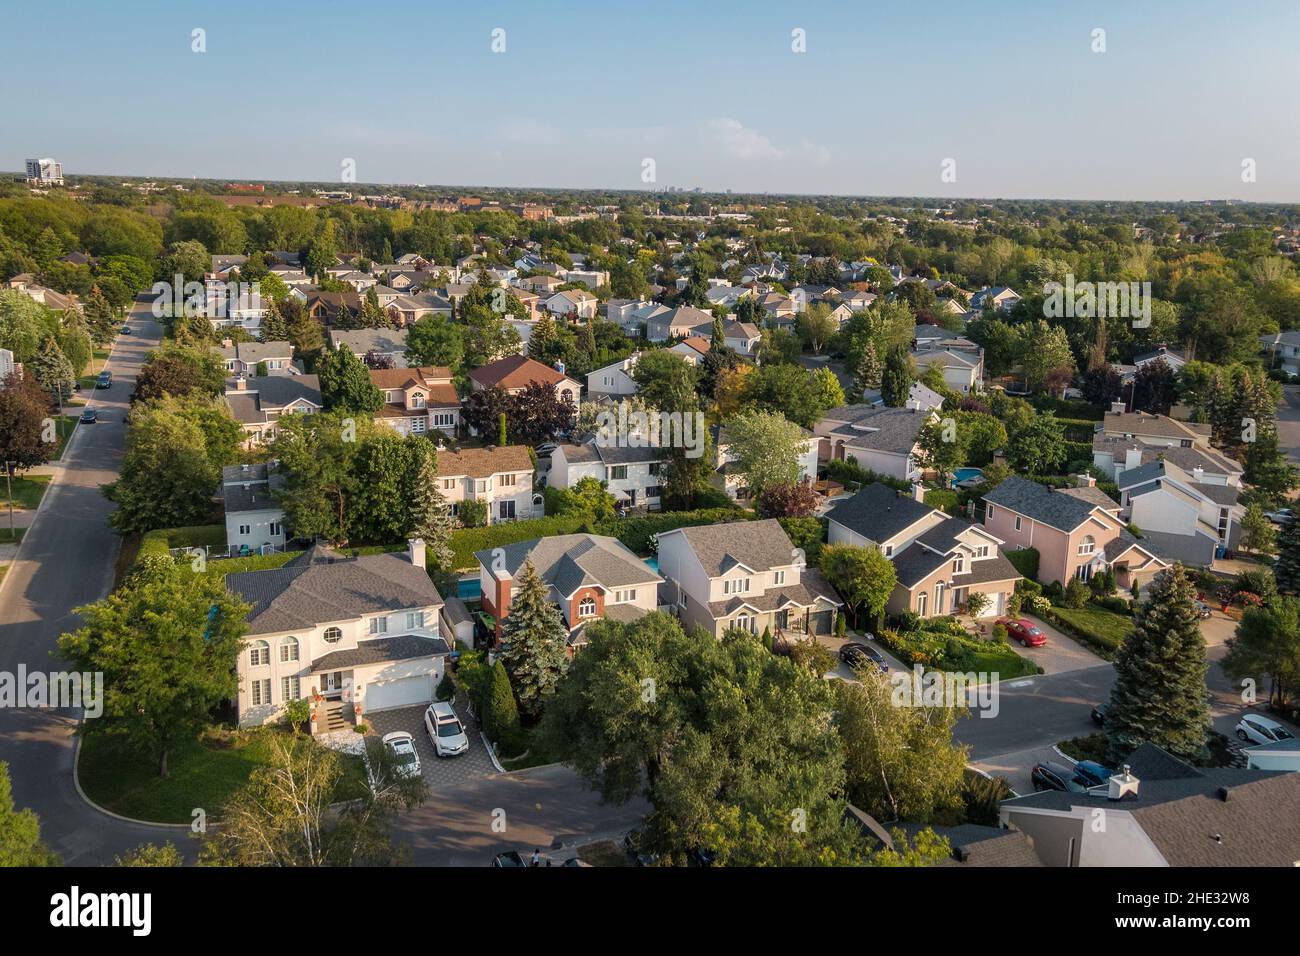 Luftaufnahme von Häusern und Straßen in einem schönen Wohnviertel in Montreal, Quebec, Kanada. Immobilien-, Immobilien- und Immobilienkonzept. Stockfoto